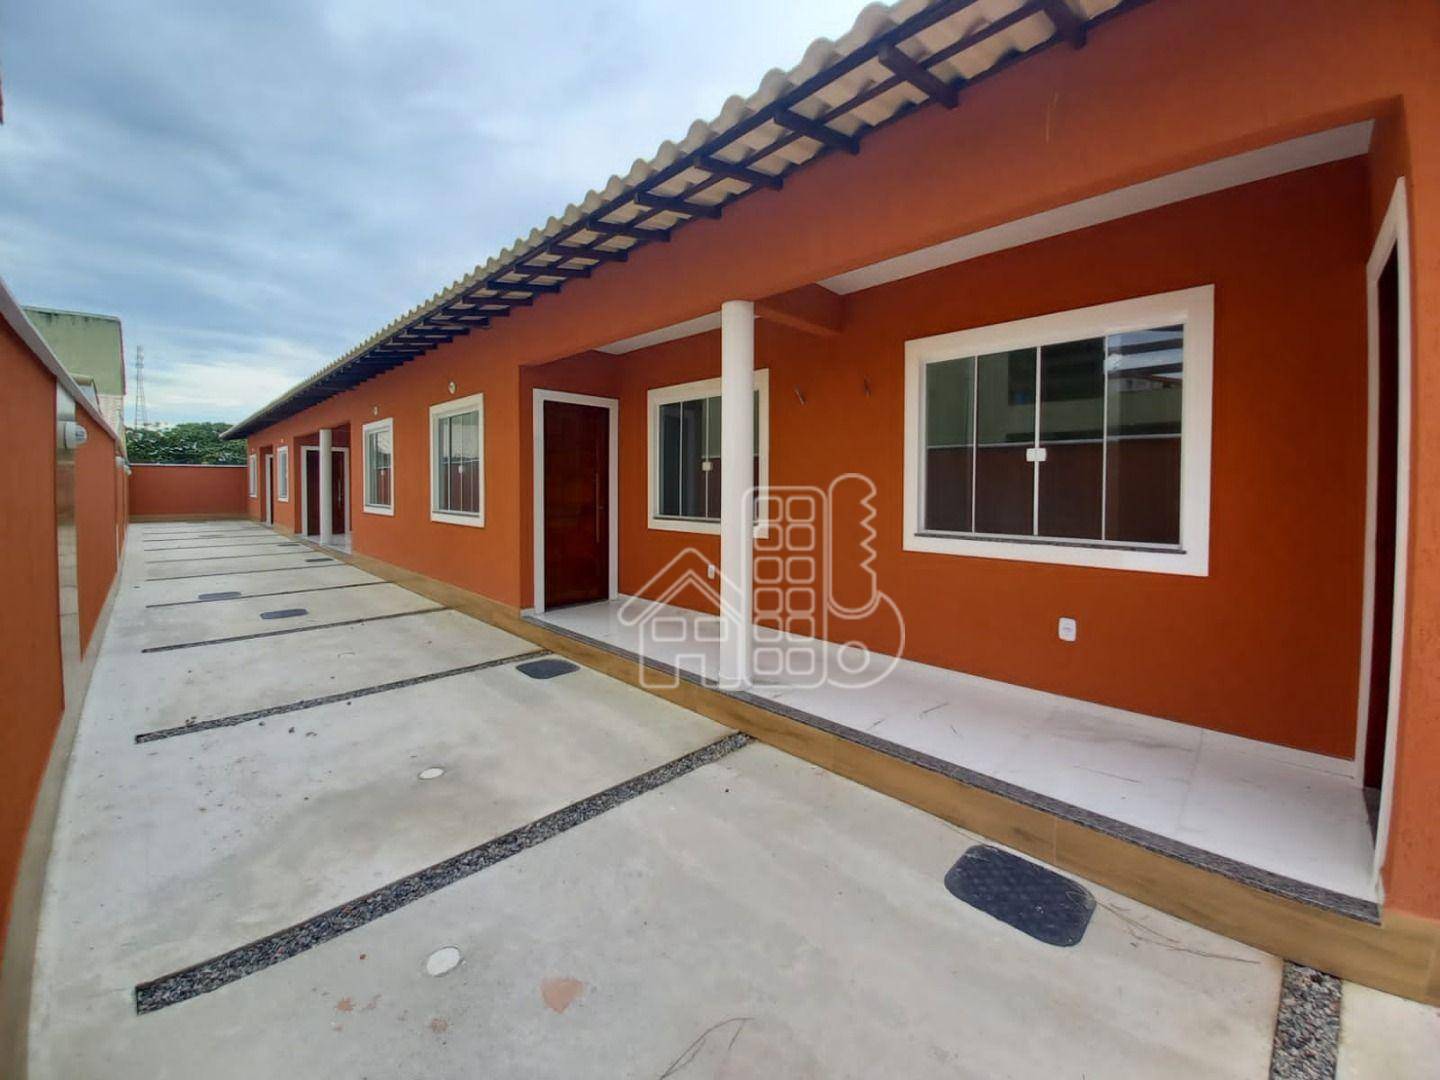 Casa com 2 dormitórios à venda, 80 m² por R$ 240.000,00 - Cordeirinho - Maricá/RJ